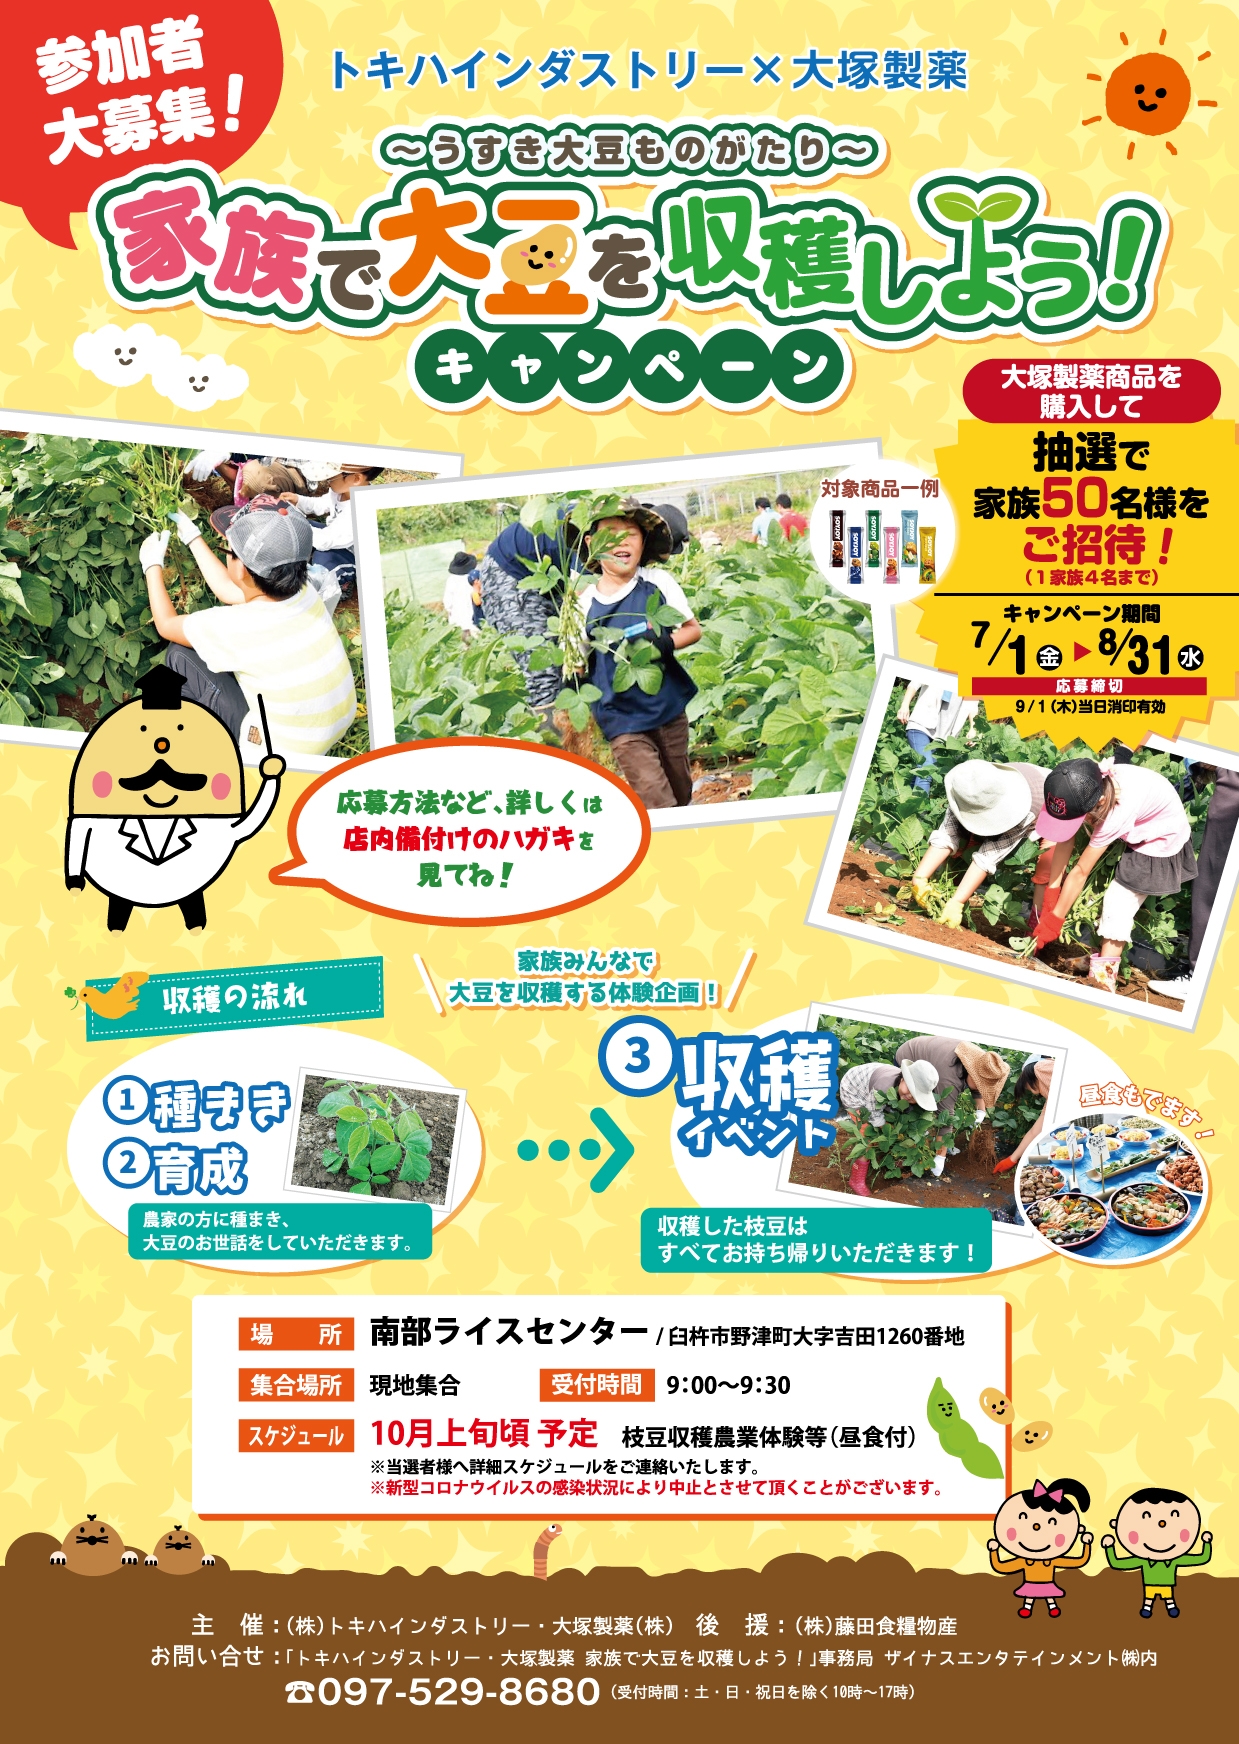 トキハインダストリー×大塚製薬 共同企画 家族で大豆を収穫しよう！キャンペーン